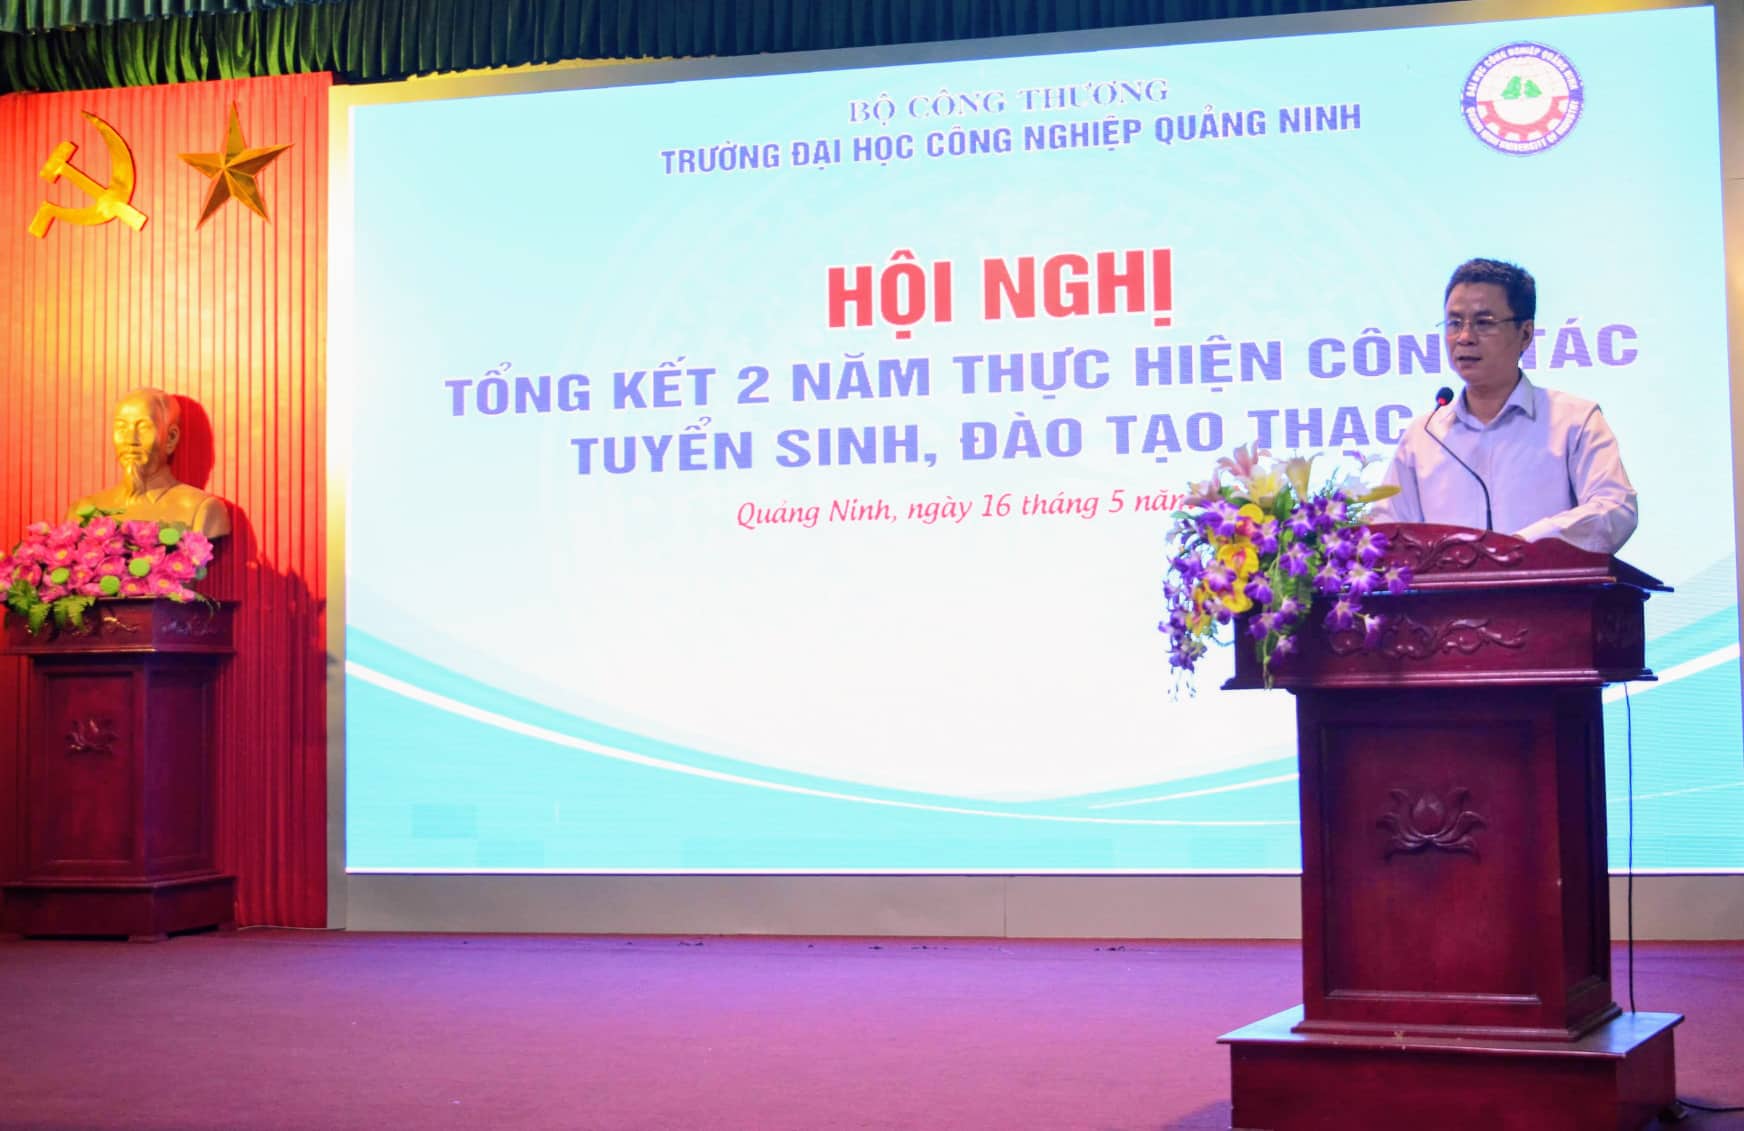 Trường ĐH Công nghiệp Quảng Ninh tổ chức Hội nghị tổng kết 2 năm thực hiện công tác tuyển sinh, đào tạo Thạc sĩ